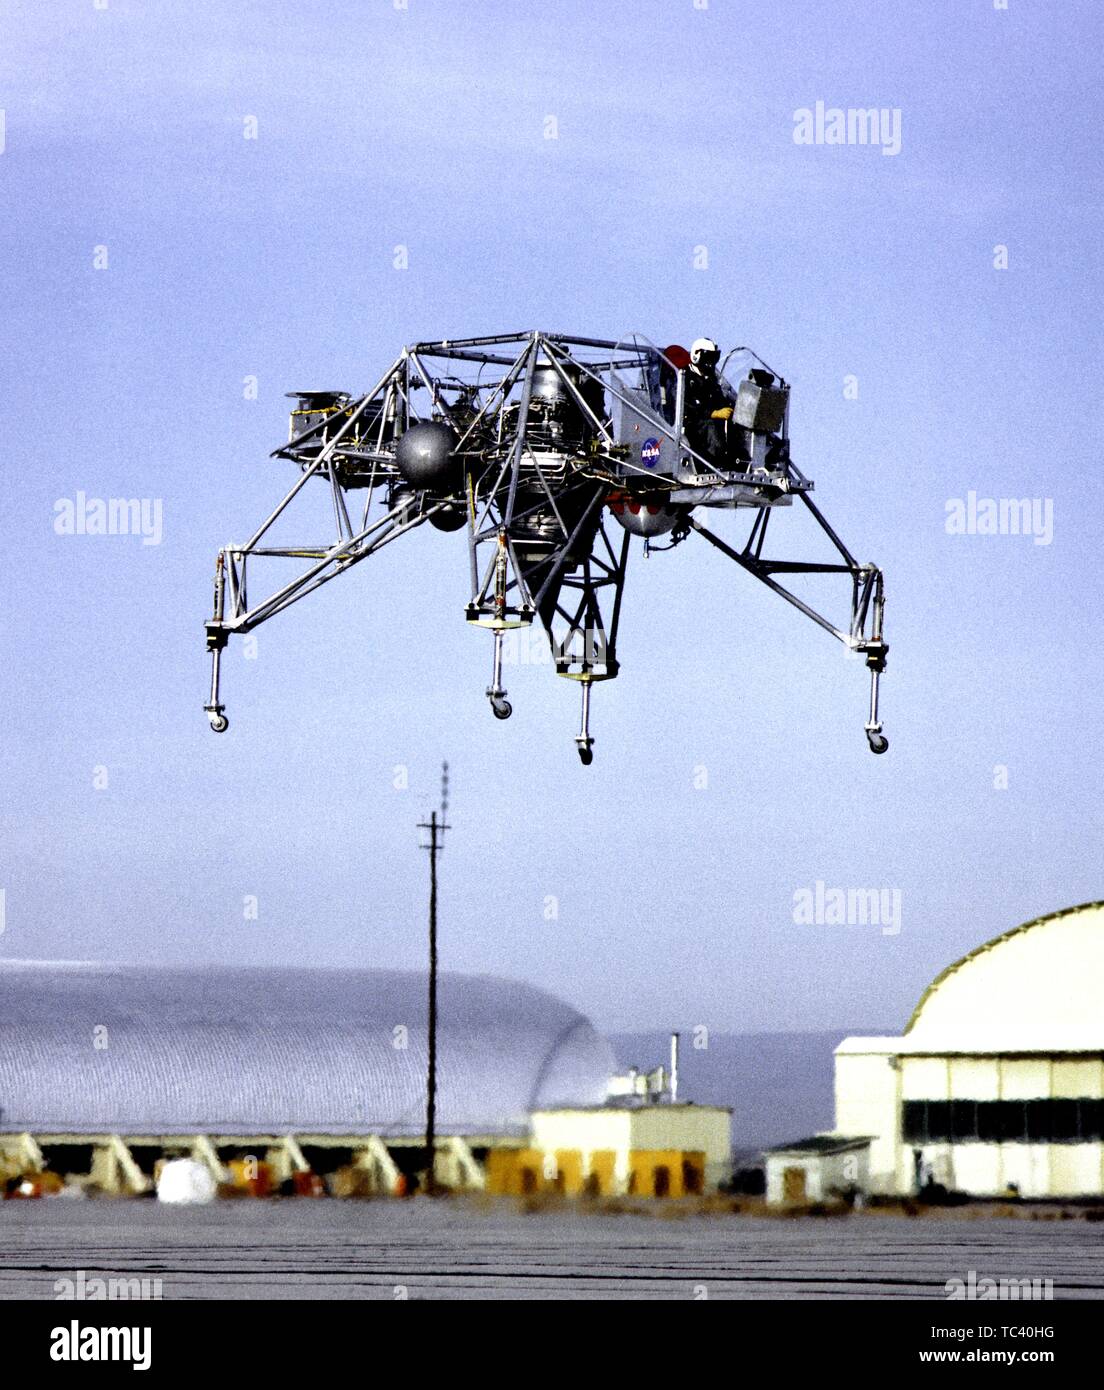 Foto von der Mondlandung Forschung Fahrzeug (LLRV) Nummer 1 im Flug an der Basis von Edwards Air Force Base, Kern County, Kalifornien, 1964. Mit freundlicher Genehmigung der Nationalen Luft- und Raumfahrtbehörde (NASA). () Stockfoto